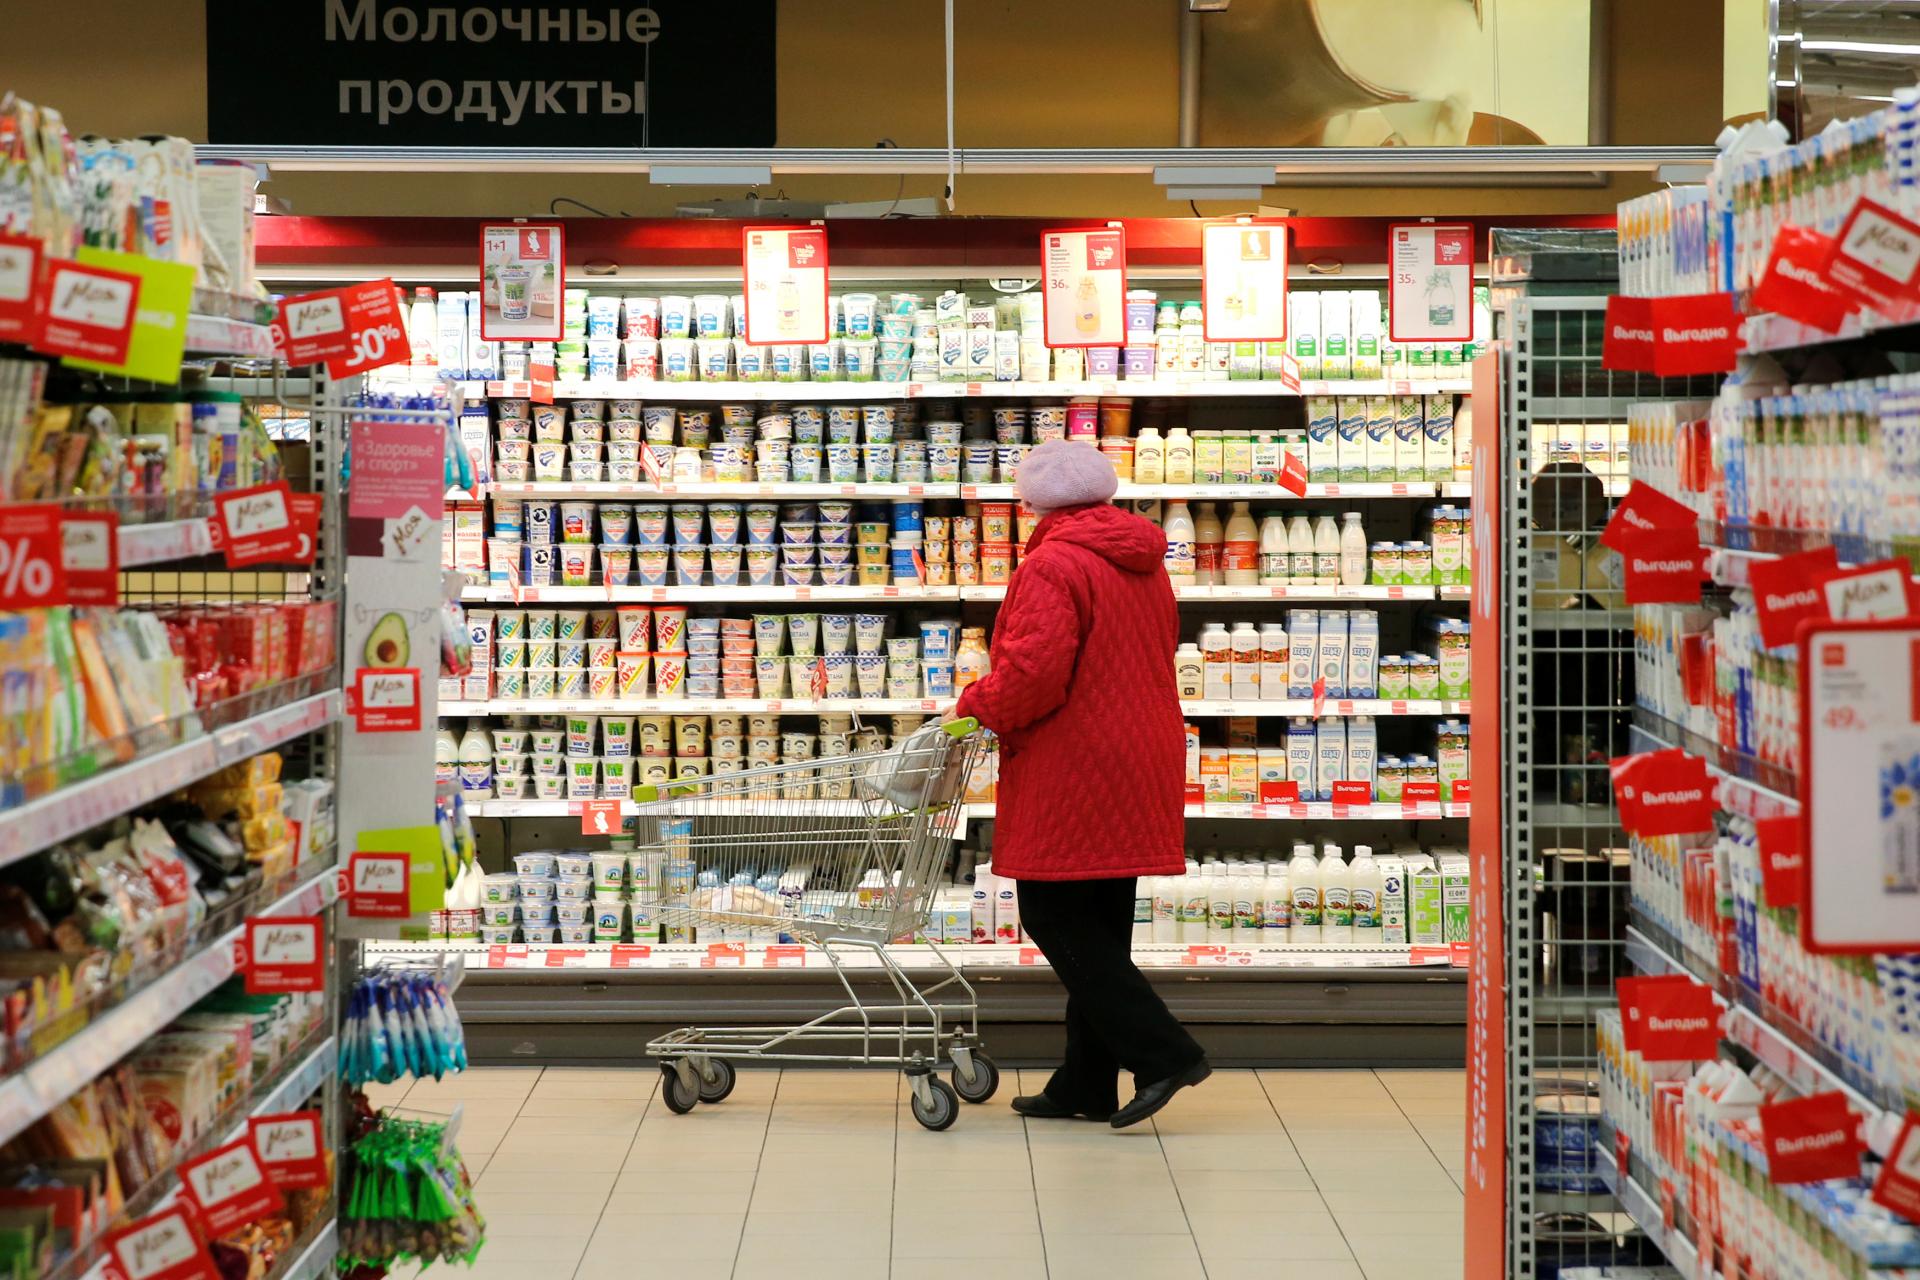 Inflácia v Rusku v marci klesla na 3,5 percenta. Ceny však rýchlo rastú a kurz rubľa klesá